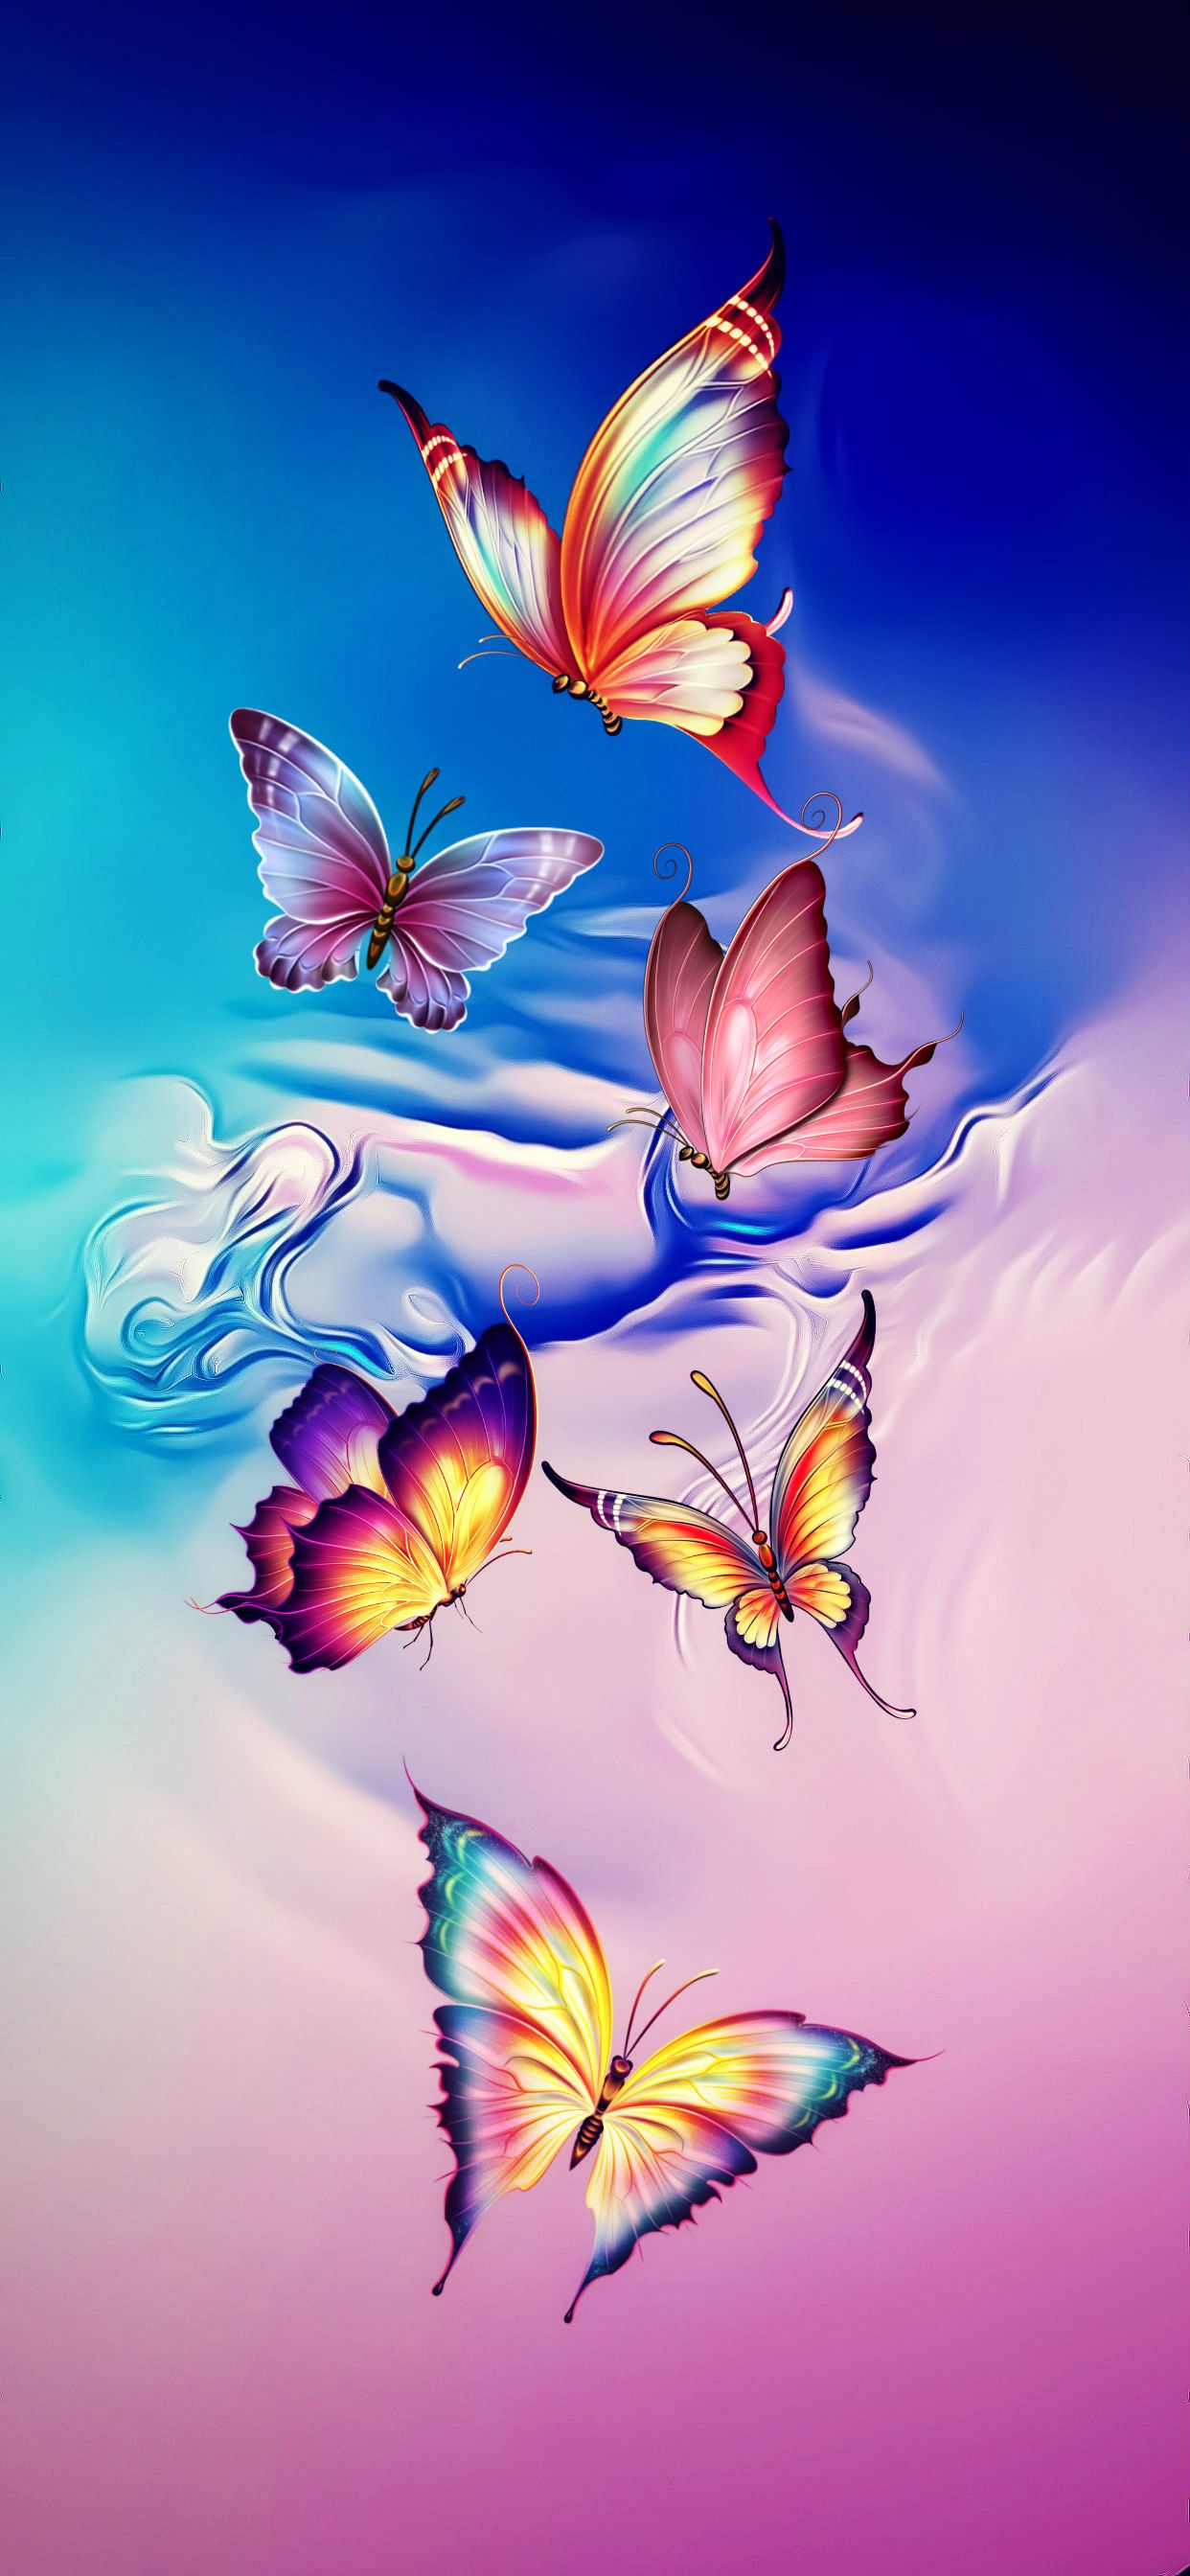 Butterflies. Butterfly wallpaper background, Beautiful butterflies art, Flower background wallpaper